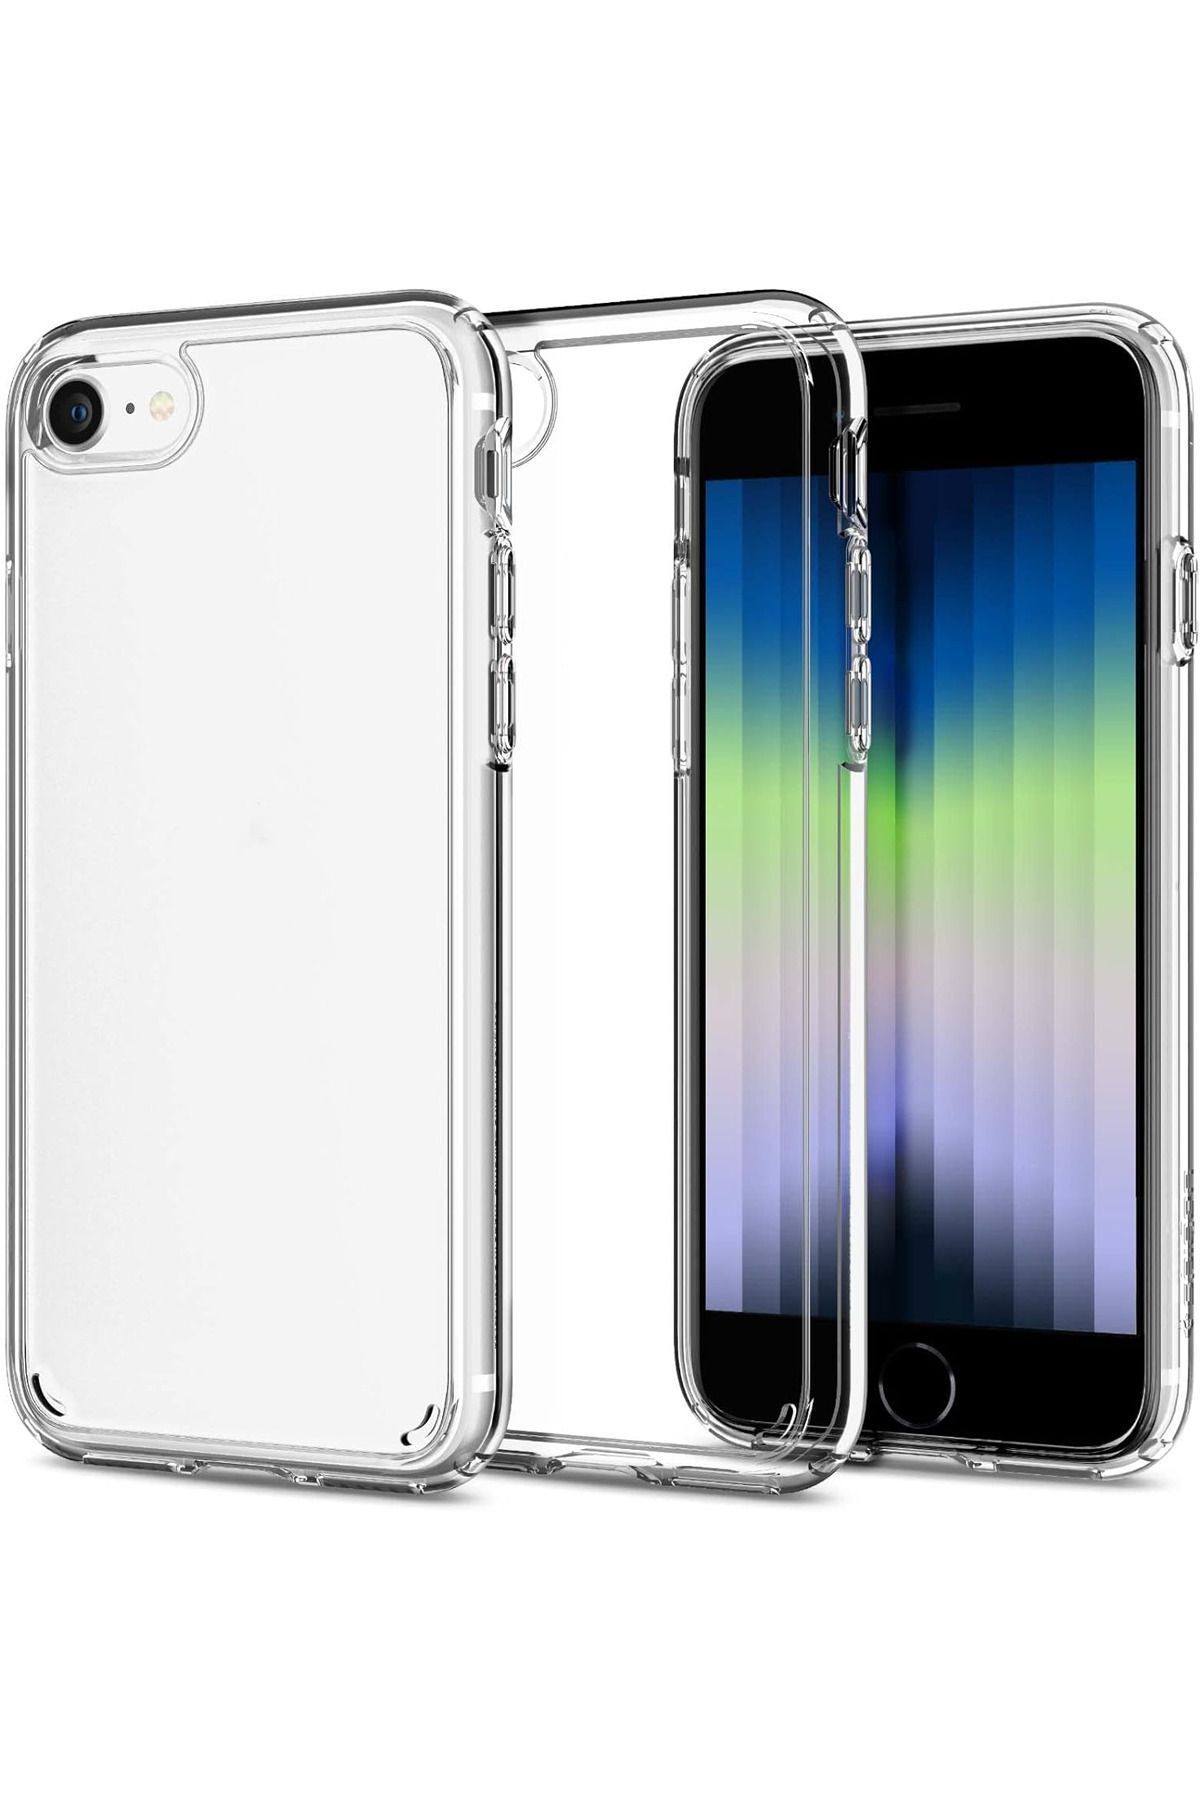 KVK PRİVACY Apple Iphone 7 / 8 / Se 2020 Uyumlu Lüks Şeffaf Ince Silikon Yumuşak Kapak Şeffaf